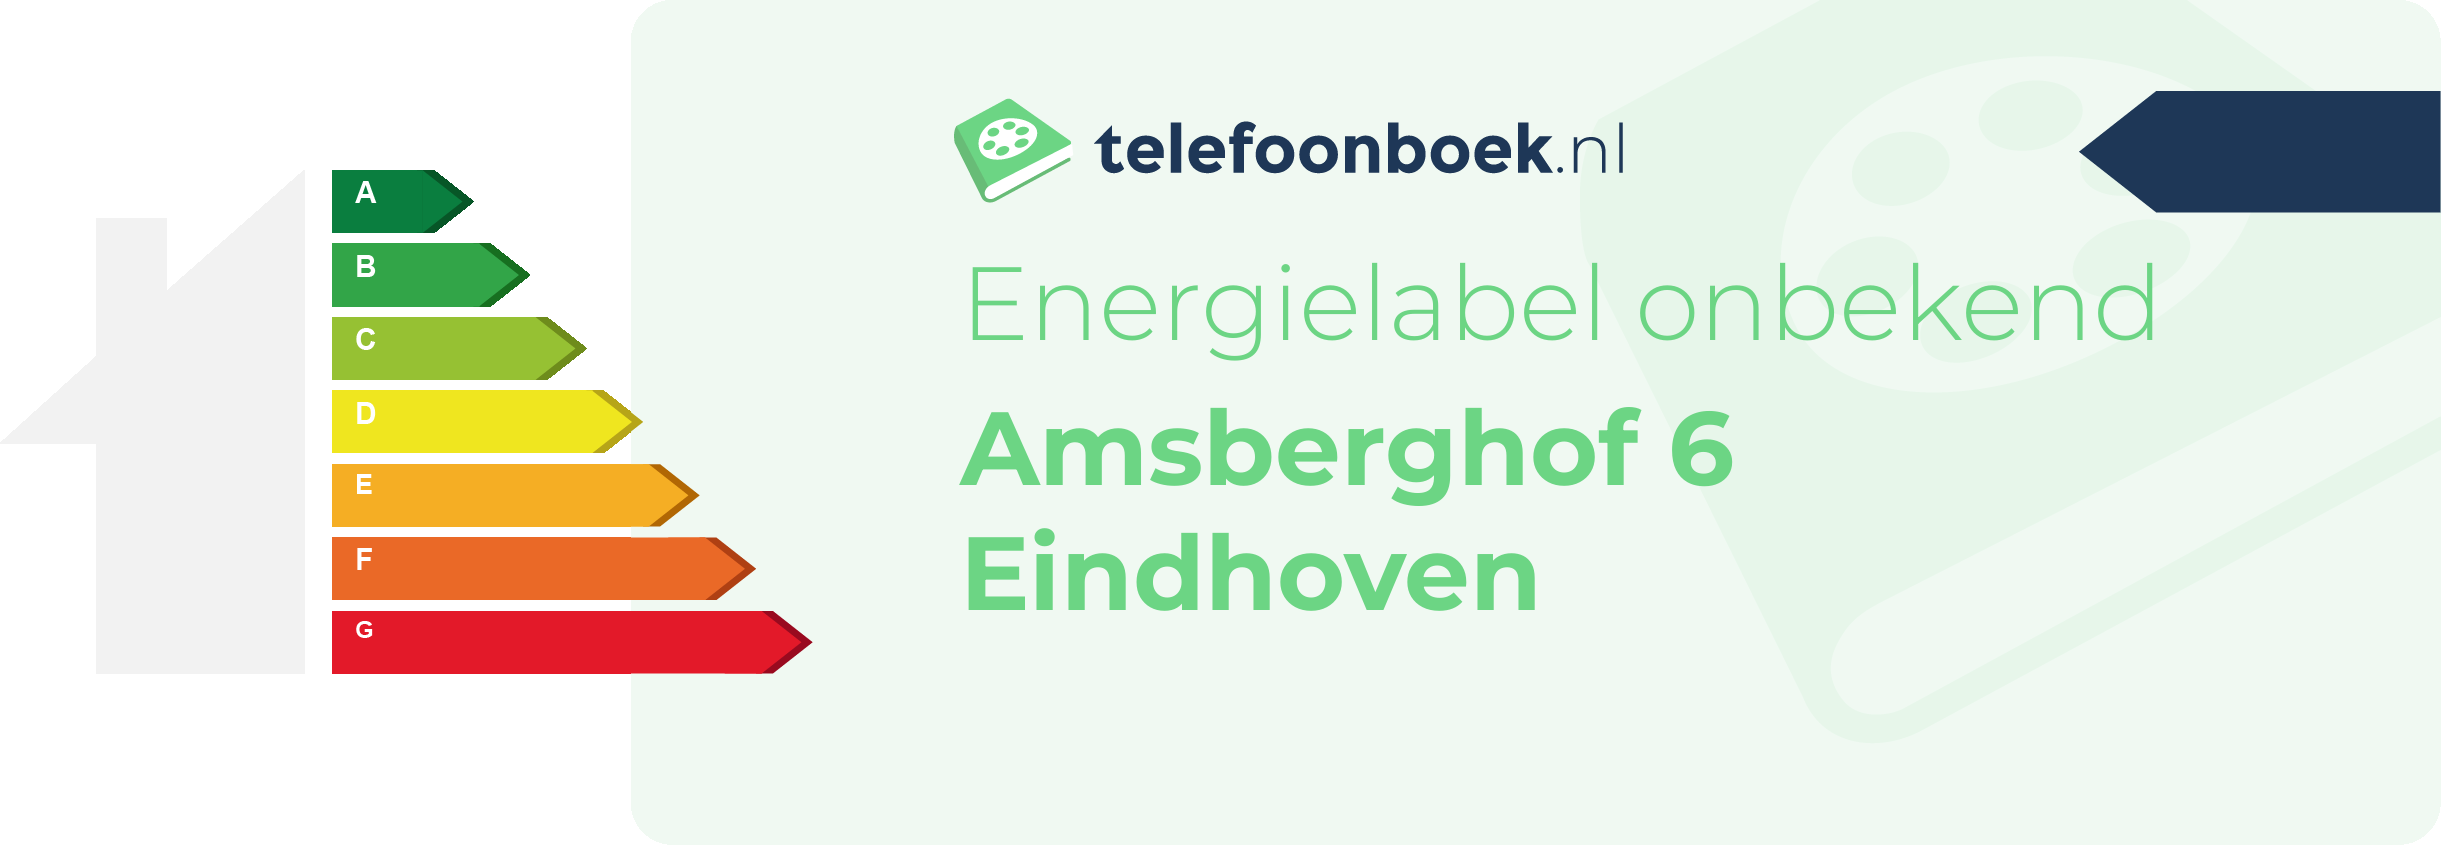 Energielabel Amsberghof 6 Eindhoven